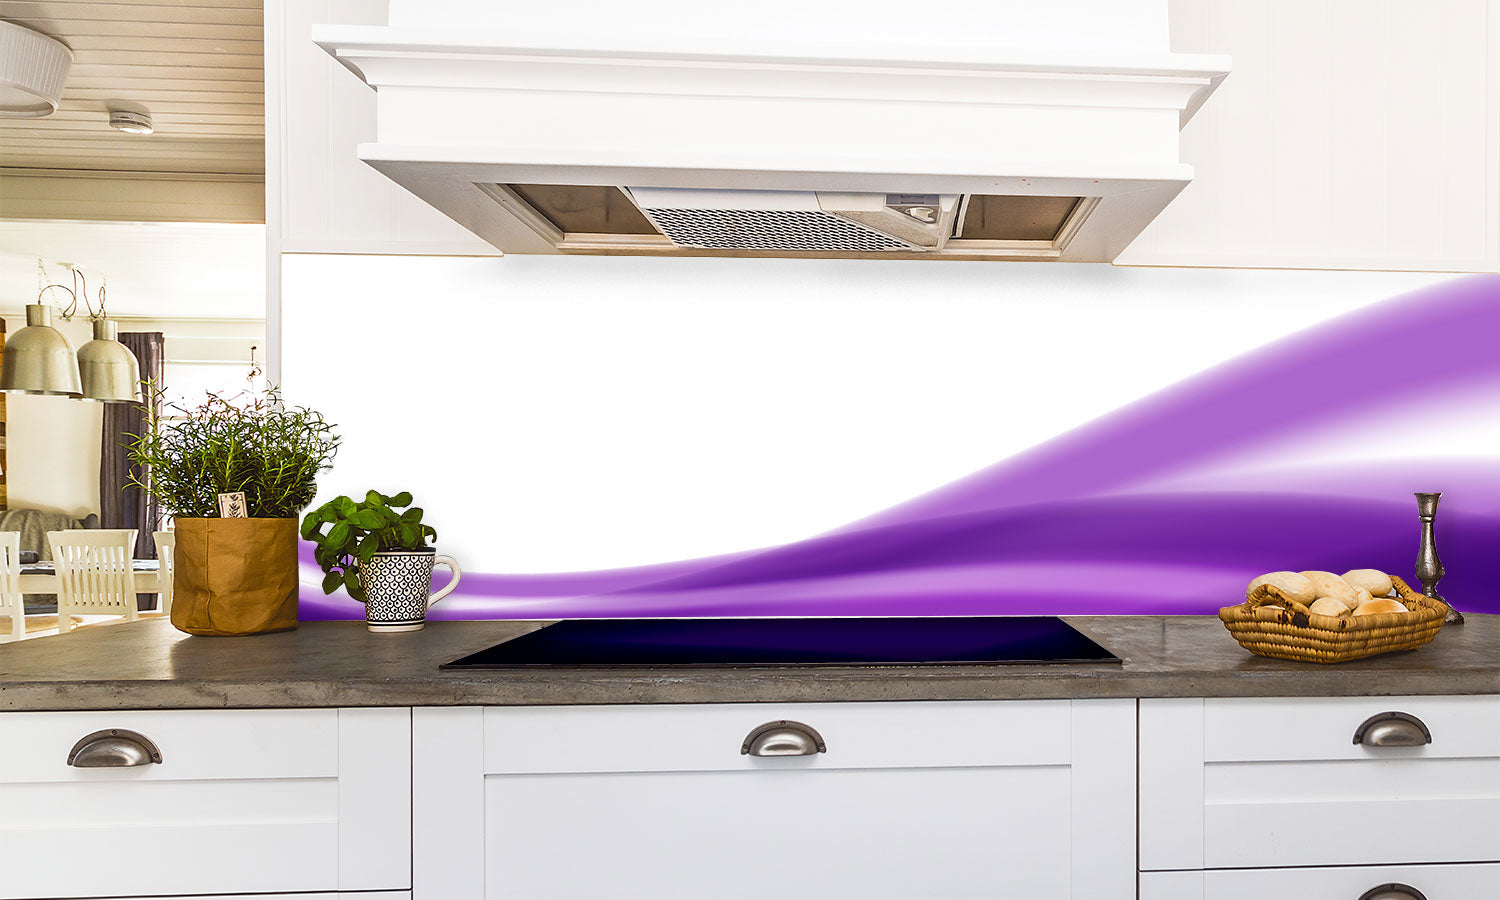 Kuhinjski paneli   Purple Lines - Stekleni / PVC plošče / Pleksi steklo - s tiskom za kuhinjo, Stenske obloge PKU045 - Life-decor.si